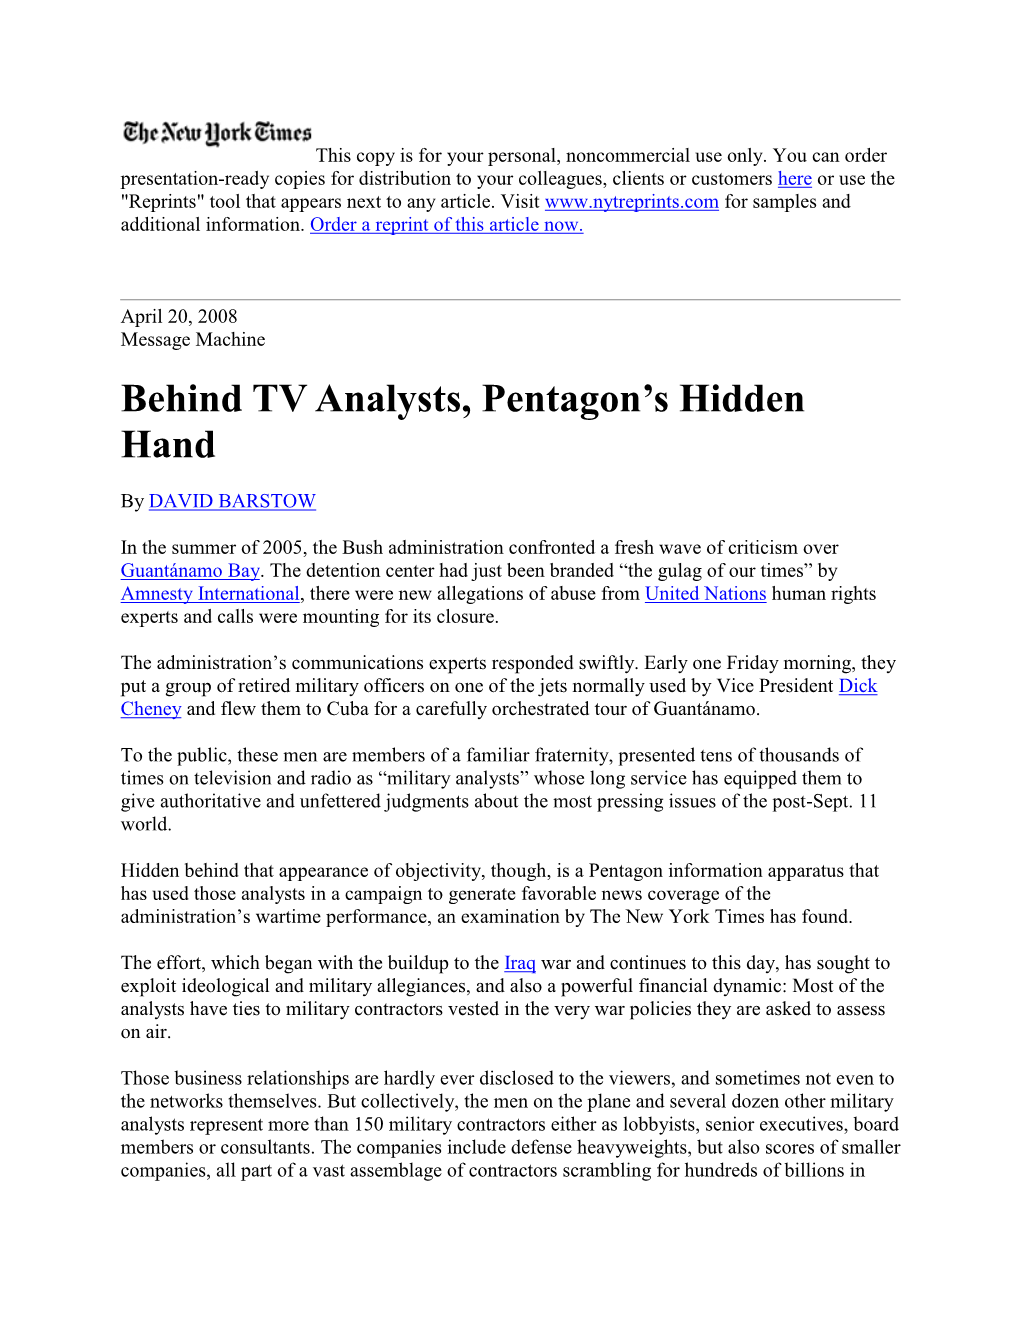 Behind TV Analysts, Pentagon's Hidden Hand